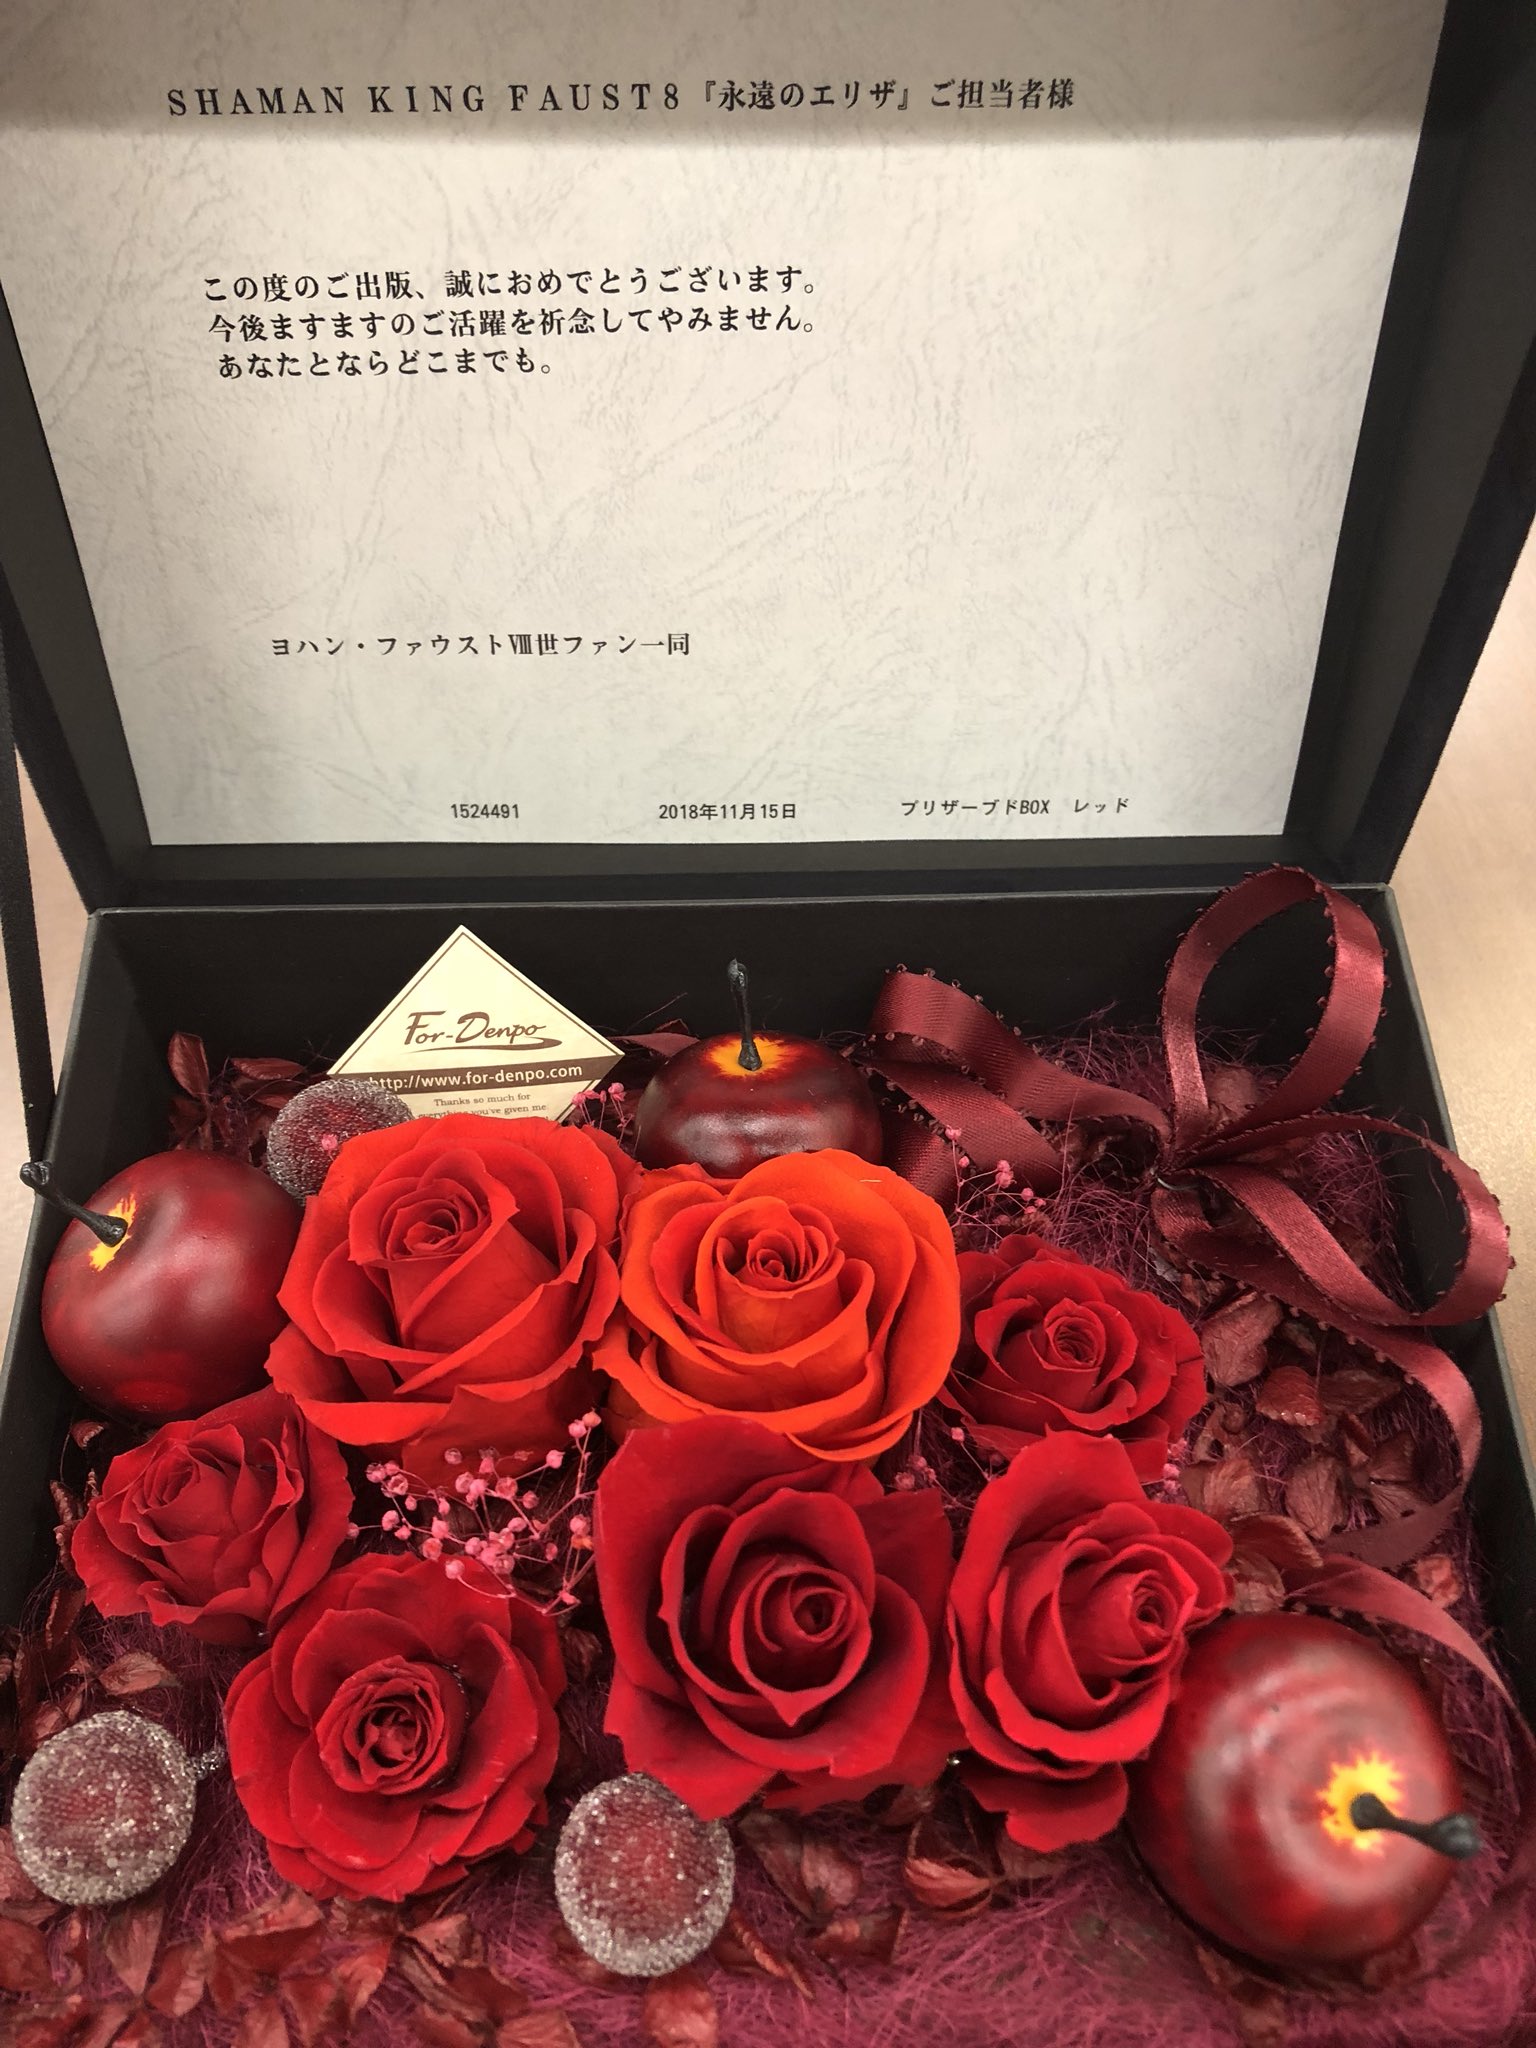 Shaman Kingth公式 Faust8 の刊行によせて ヨハン ファウスト 世ファンの方々から真紅の薔薇をいただきました ありがとうございます